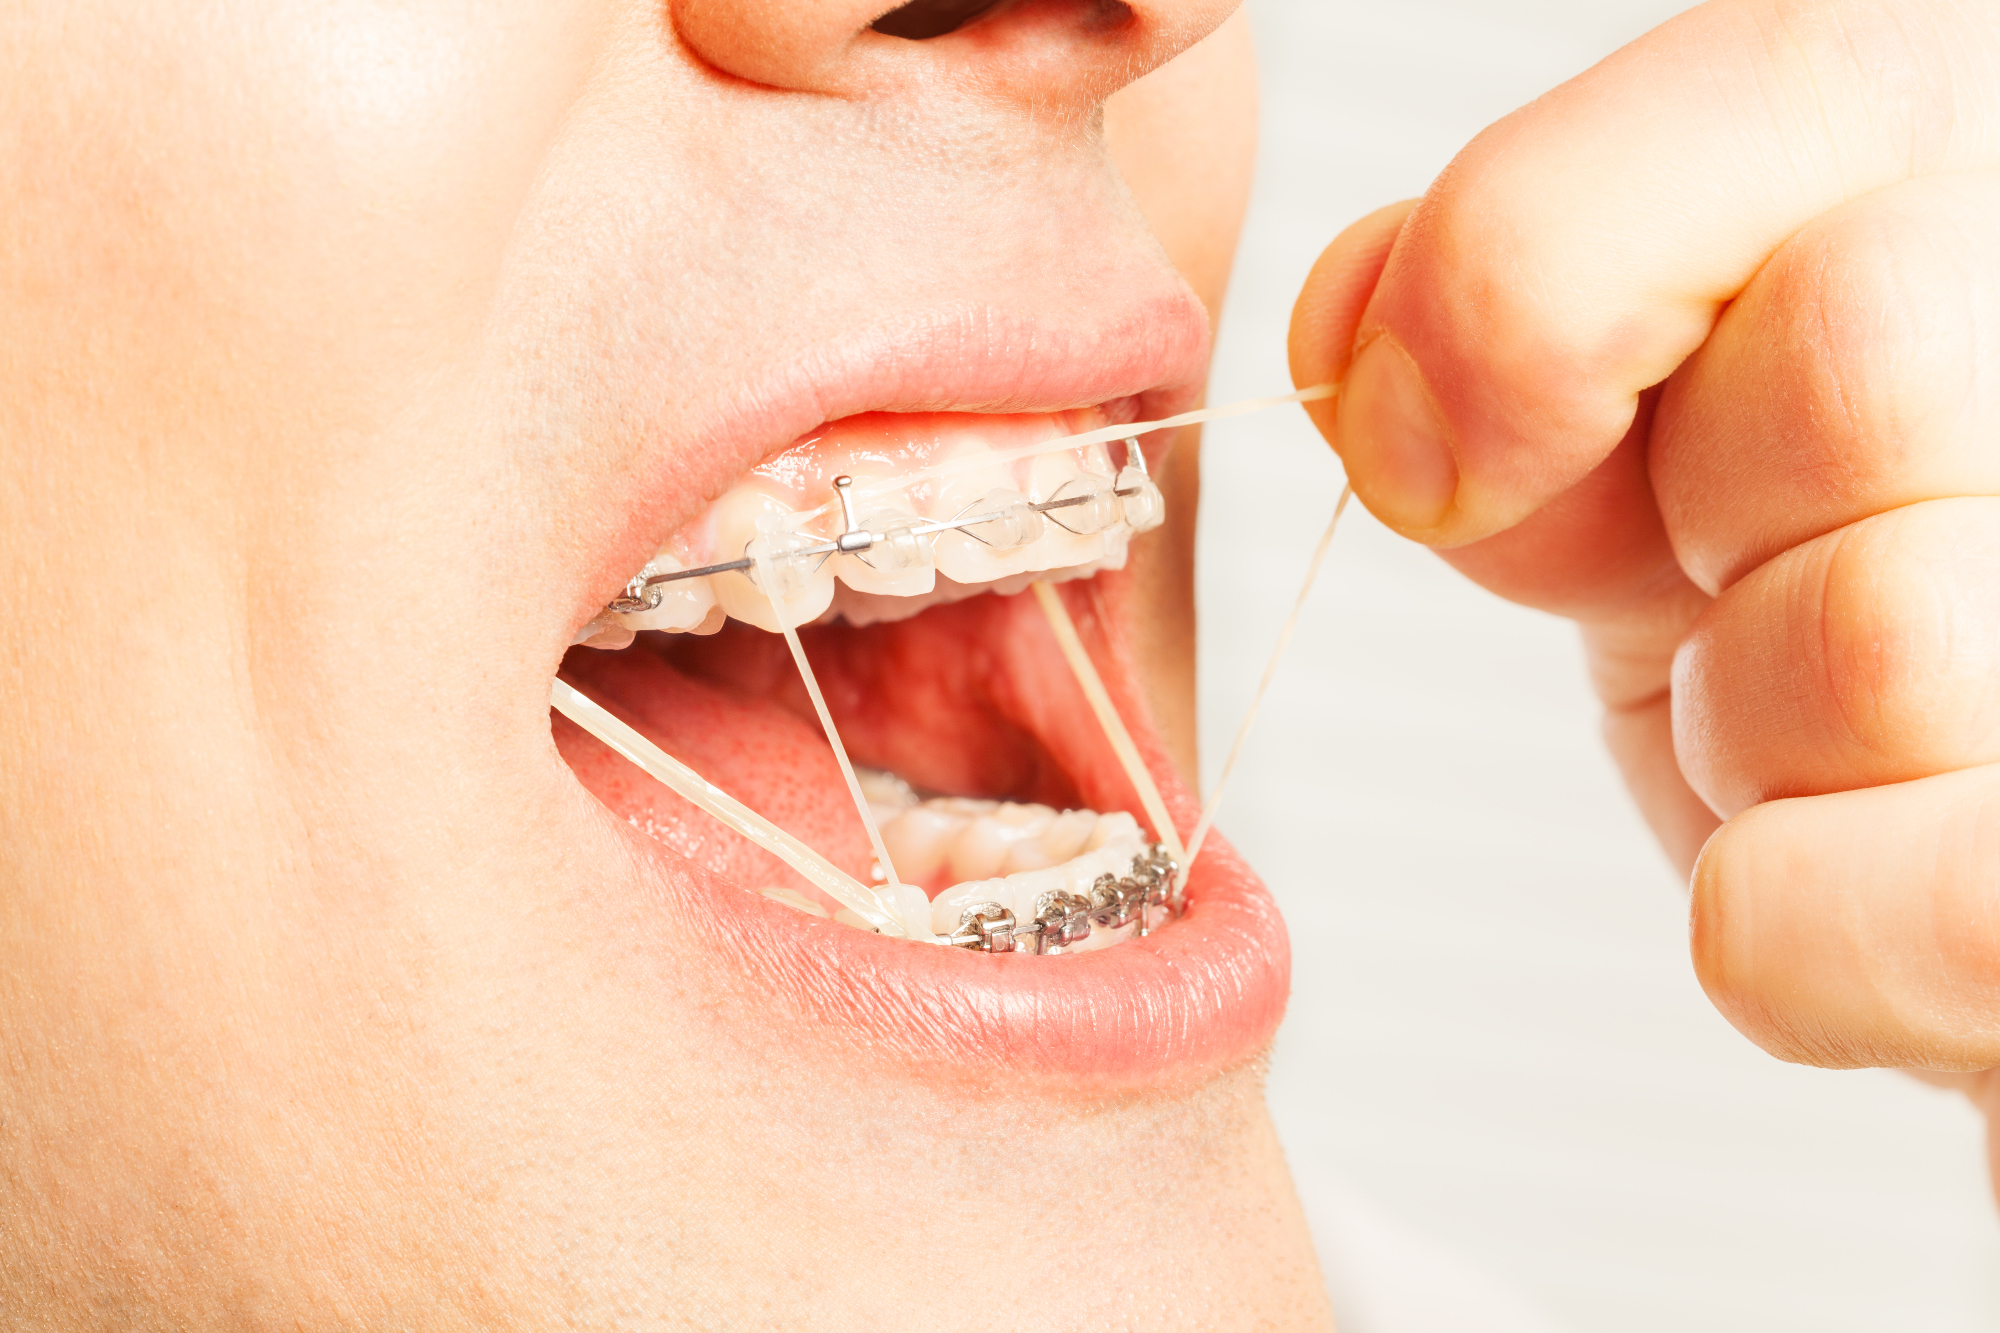 Ortodont vam lahko pomaga izbrati najustreznejši zobni aparat